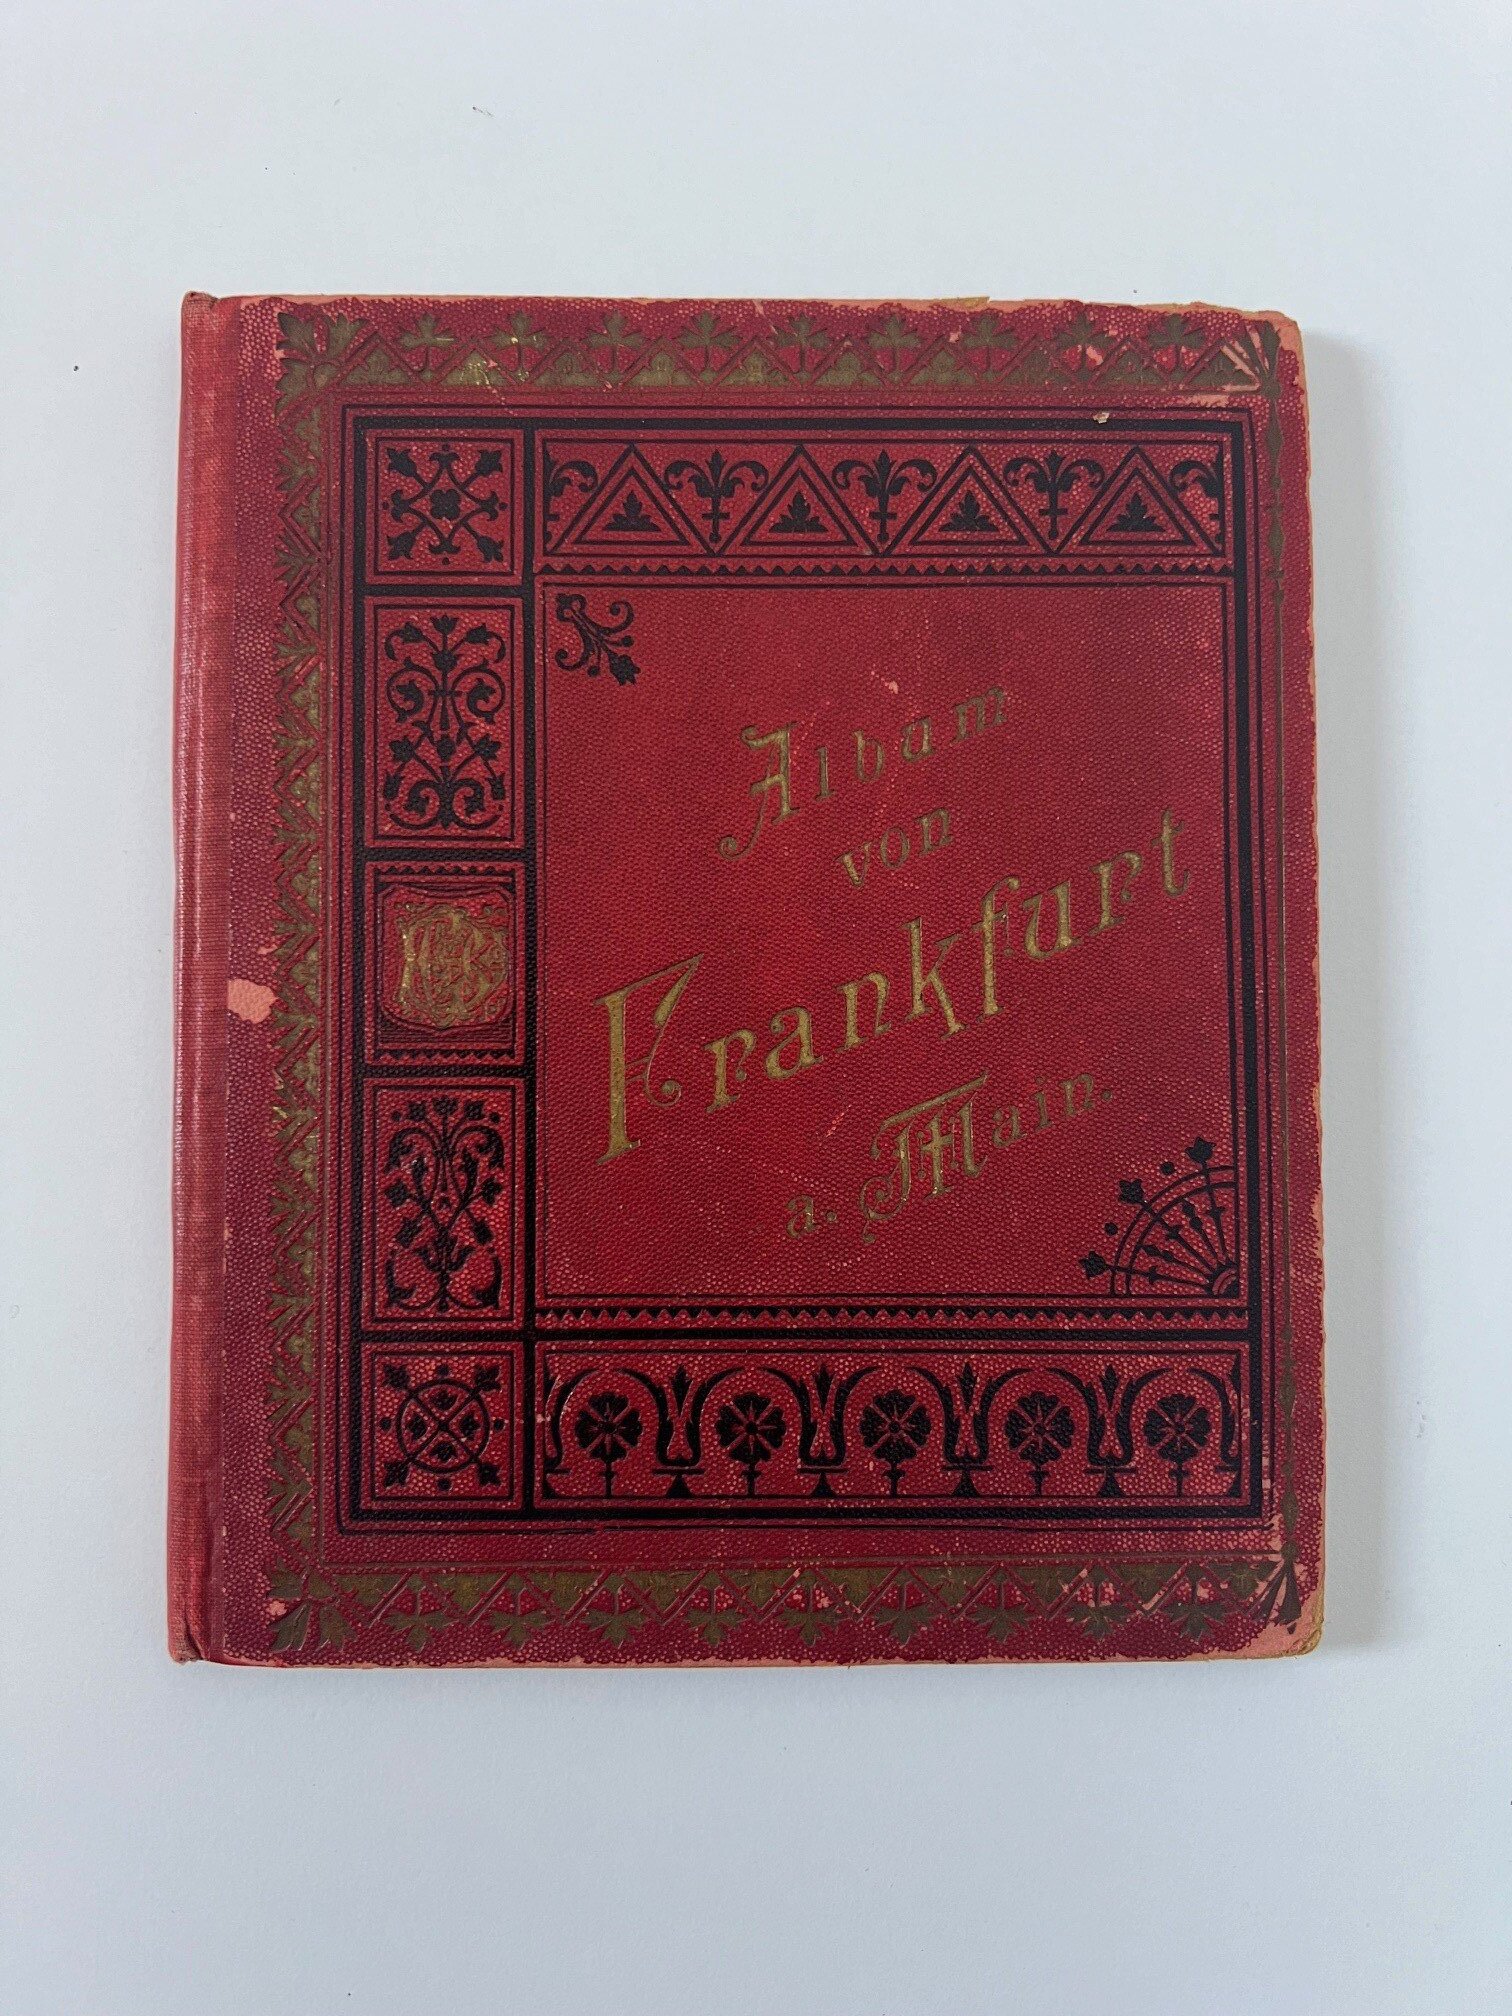 Verlag Gerhard Blümlein & Co, Album von Frankfurt am Main, 33 Lithographien als Leporello, ca. 1895. (Taunus-Rhein-Main - Regionalgeschichtliche Sammlung Dr. Stefan Naas CC BY-NC-SA)